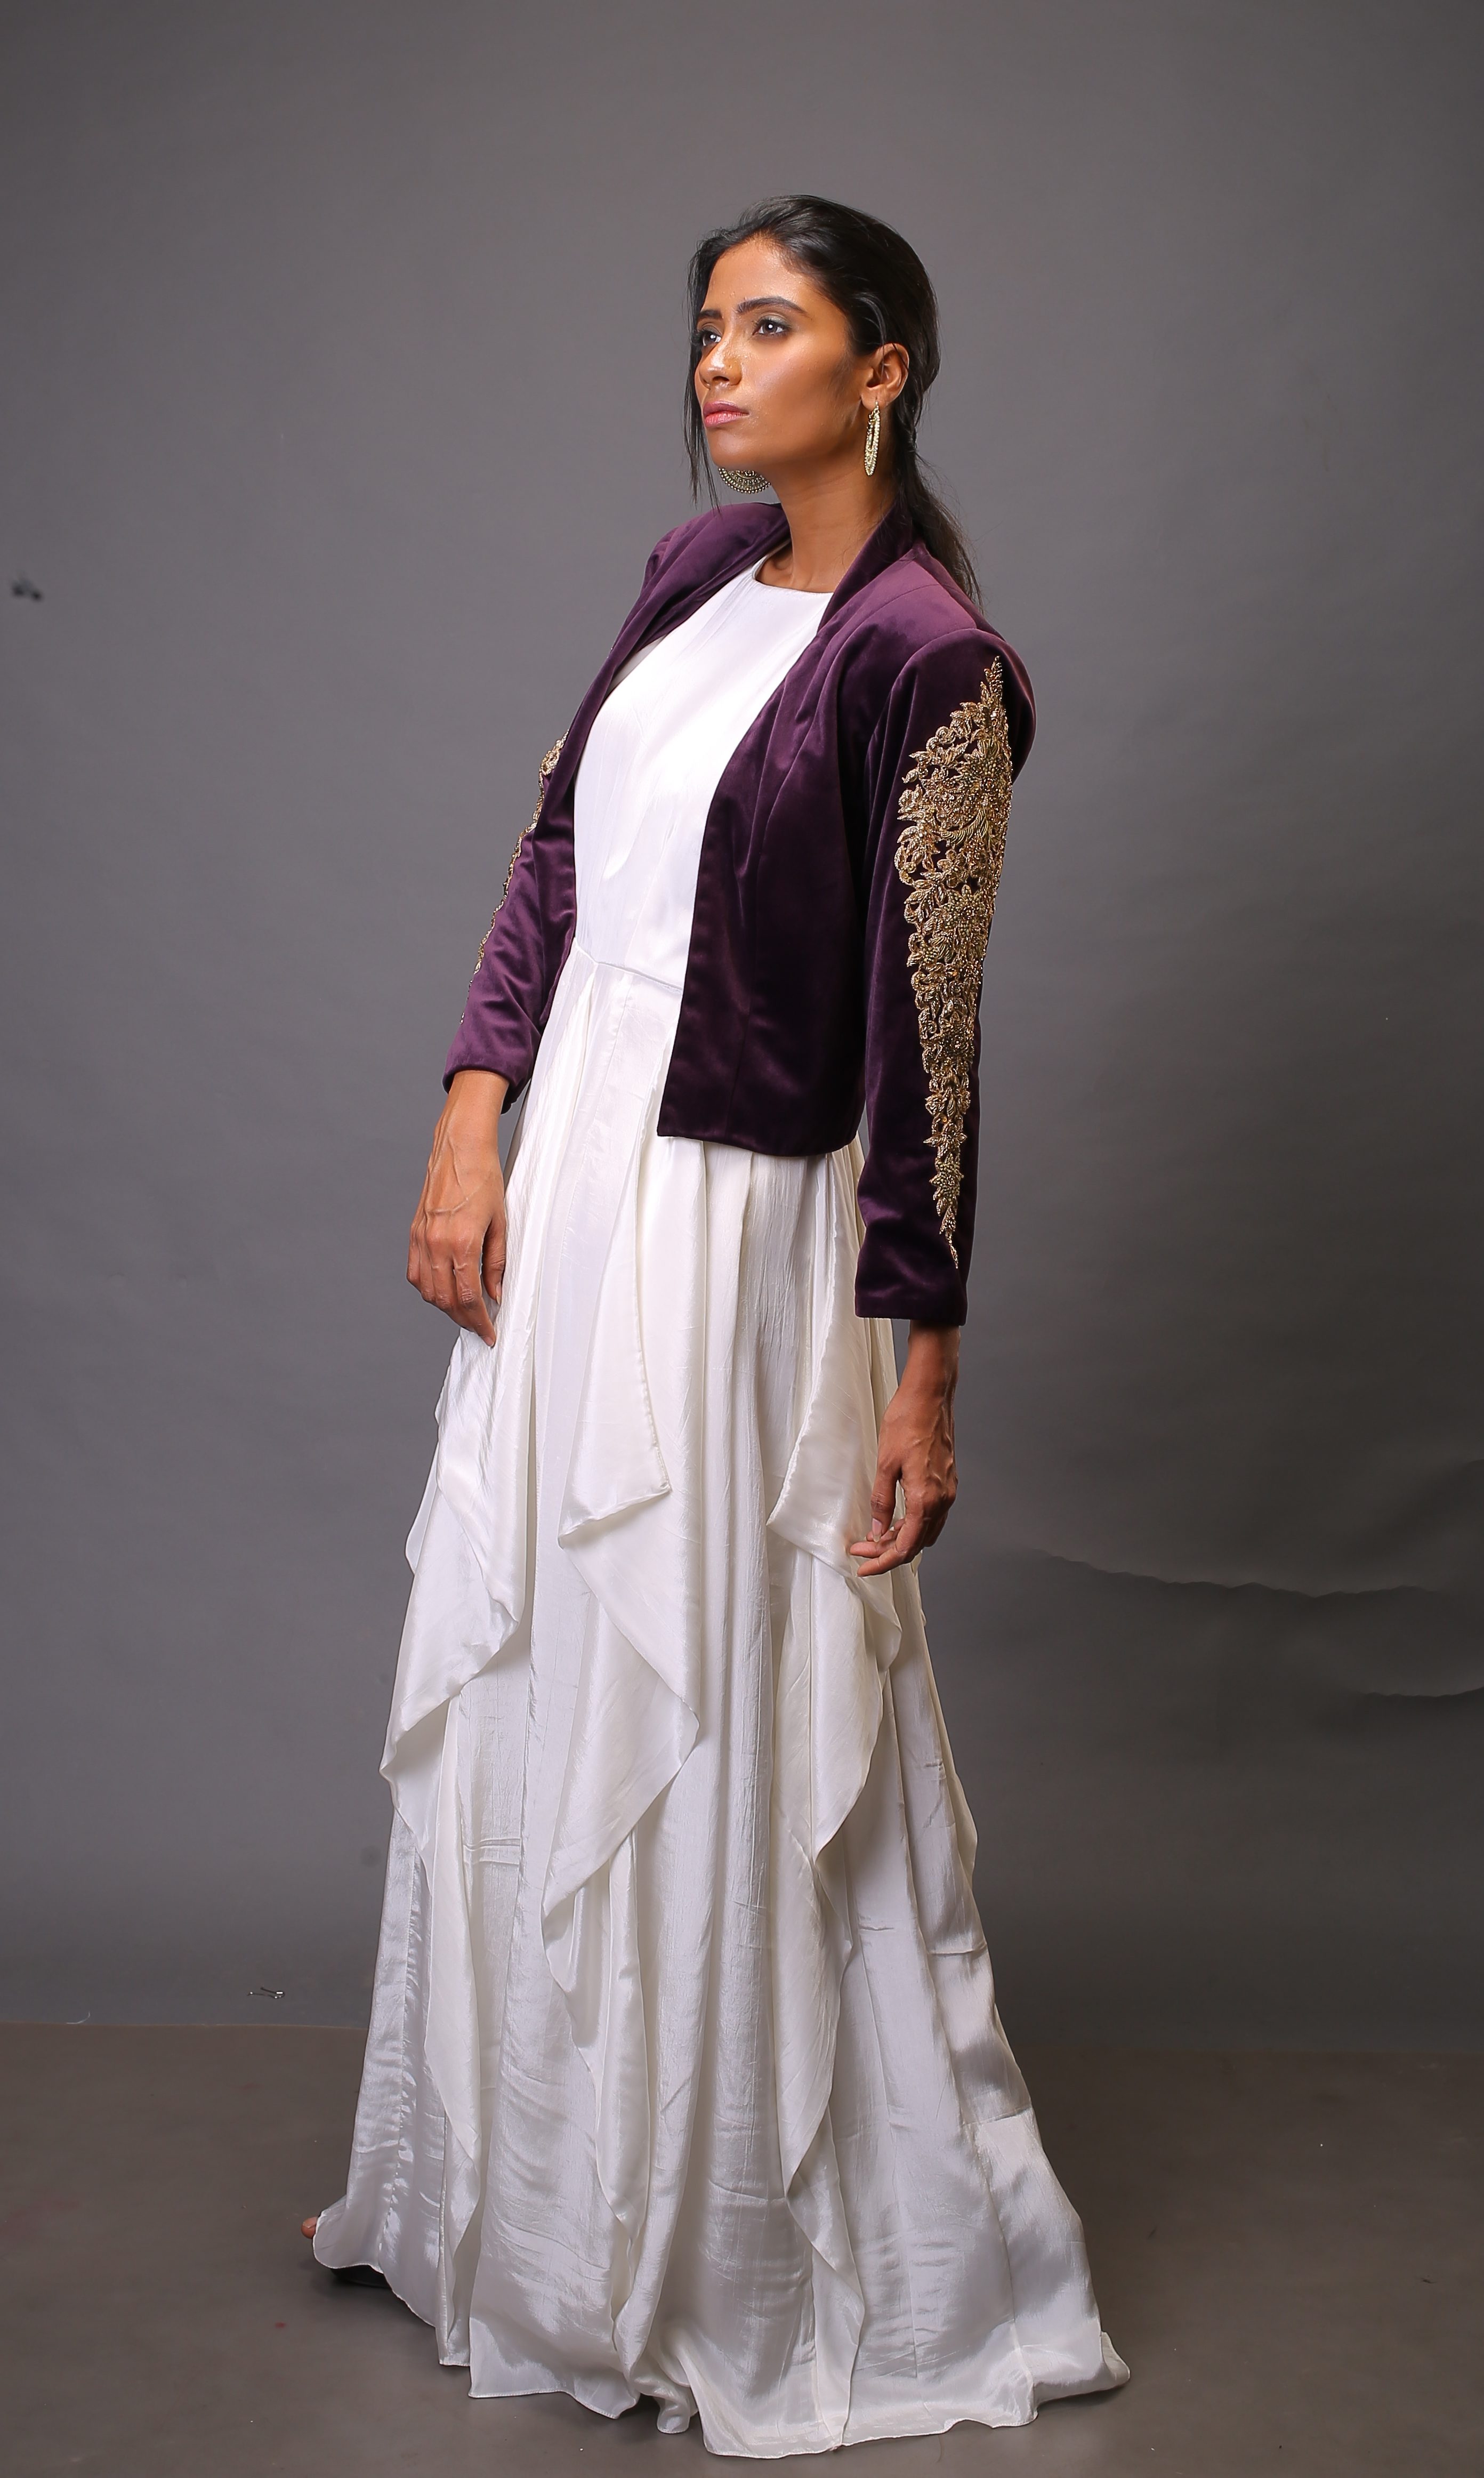 Khwaab Golden Jacket Style Sleeveless Evening Gown - Khwaab - 2740981-sieuthinhanong.vn